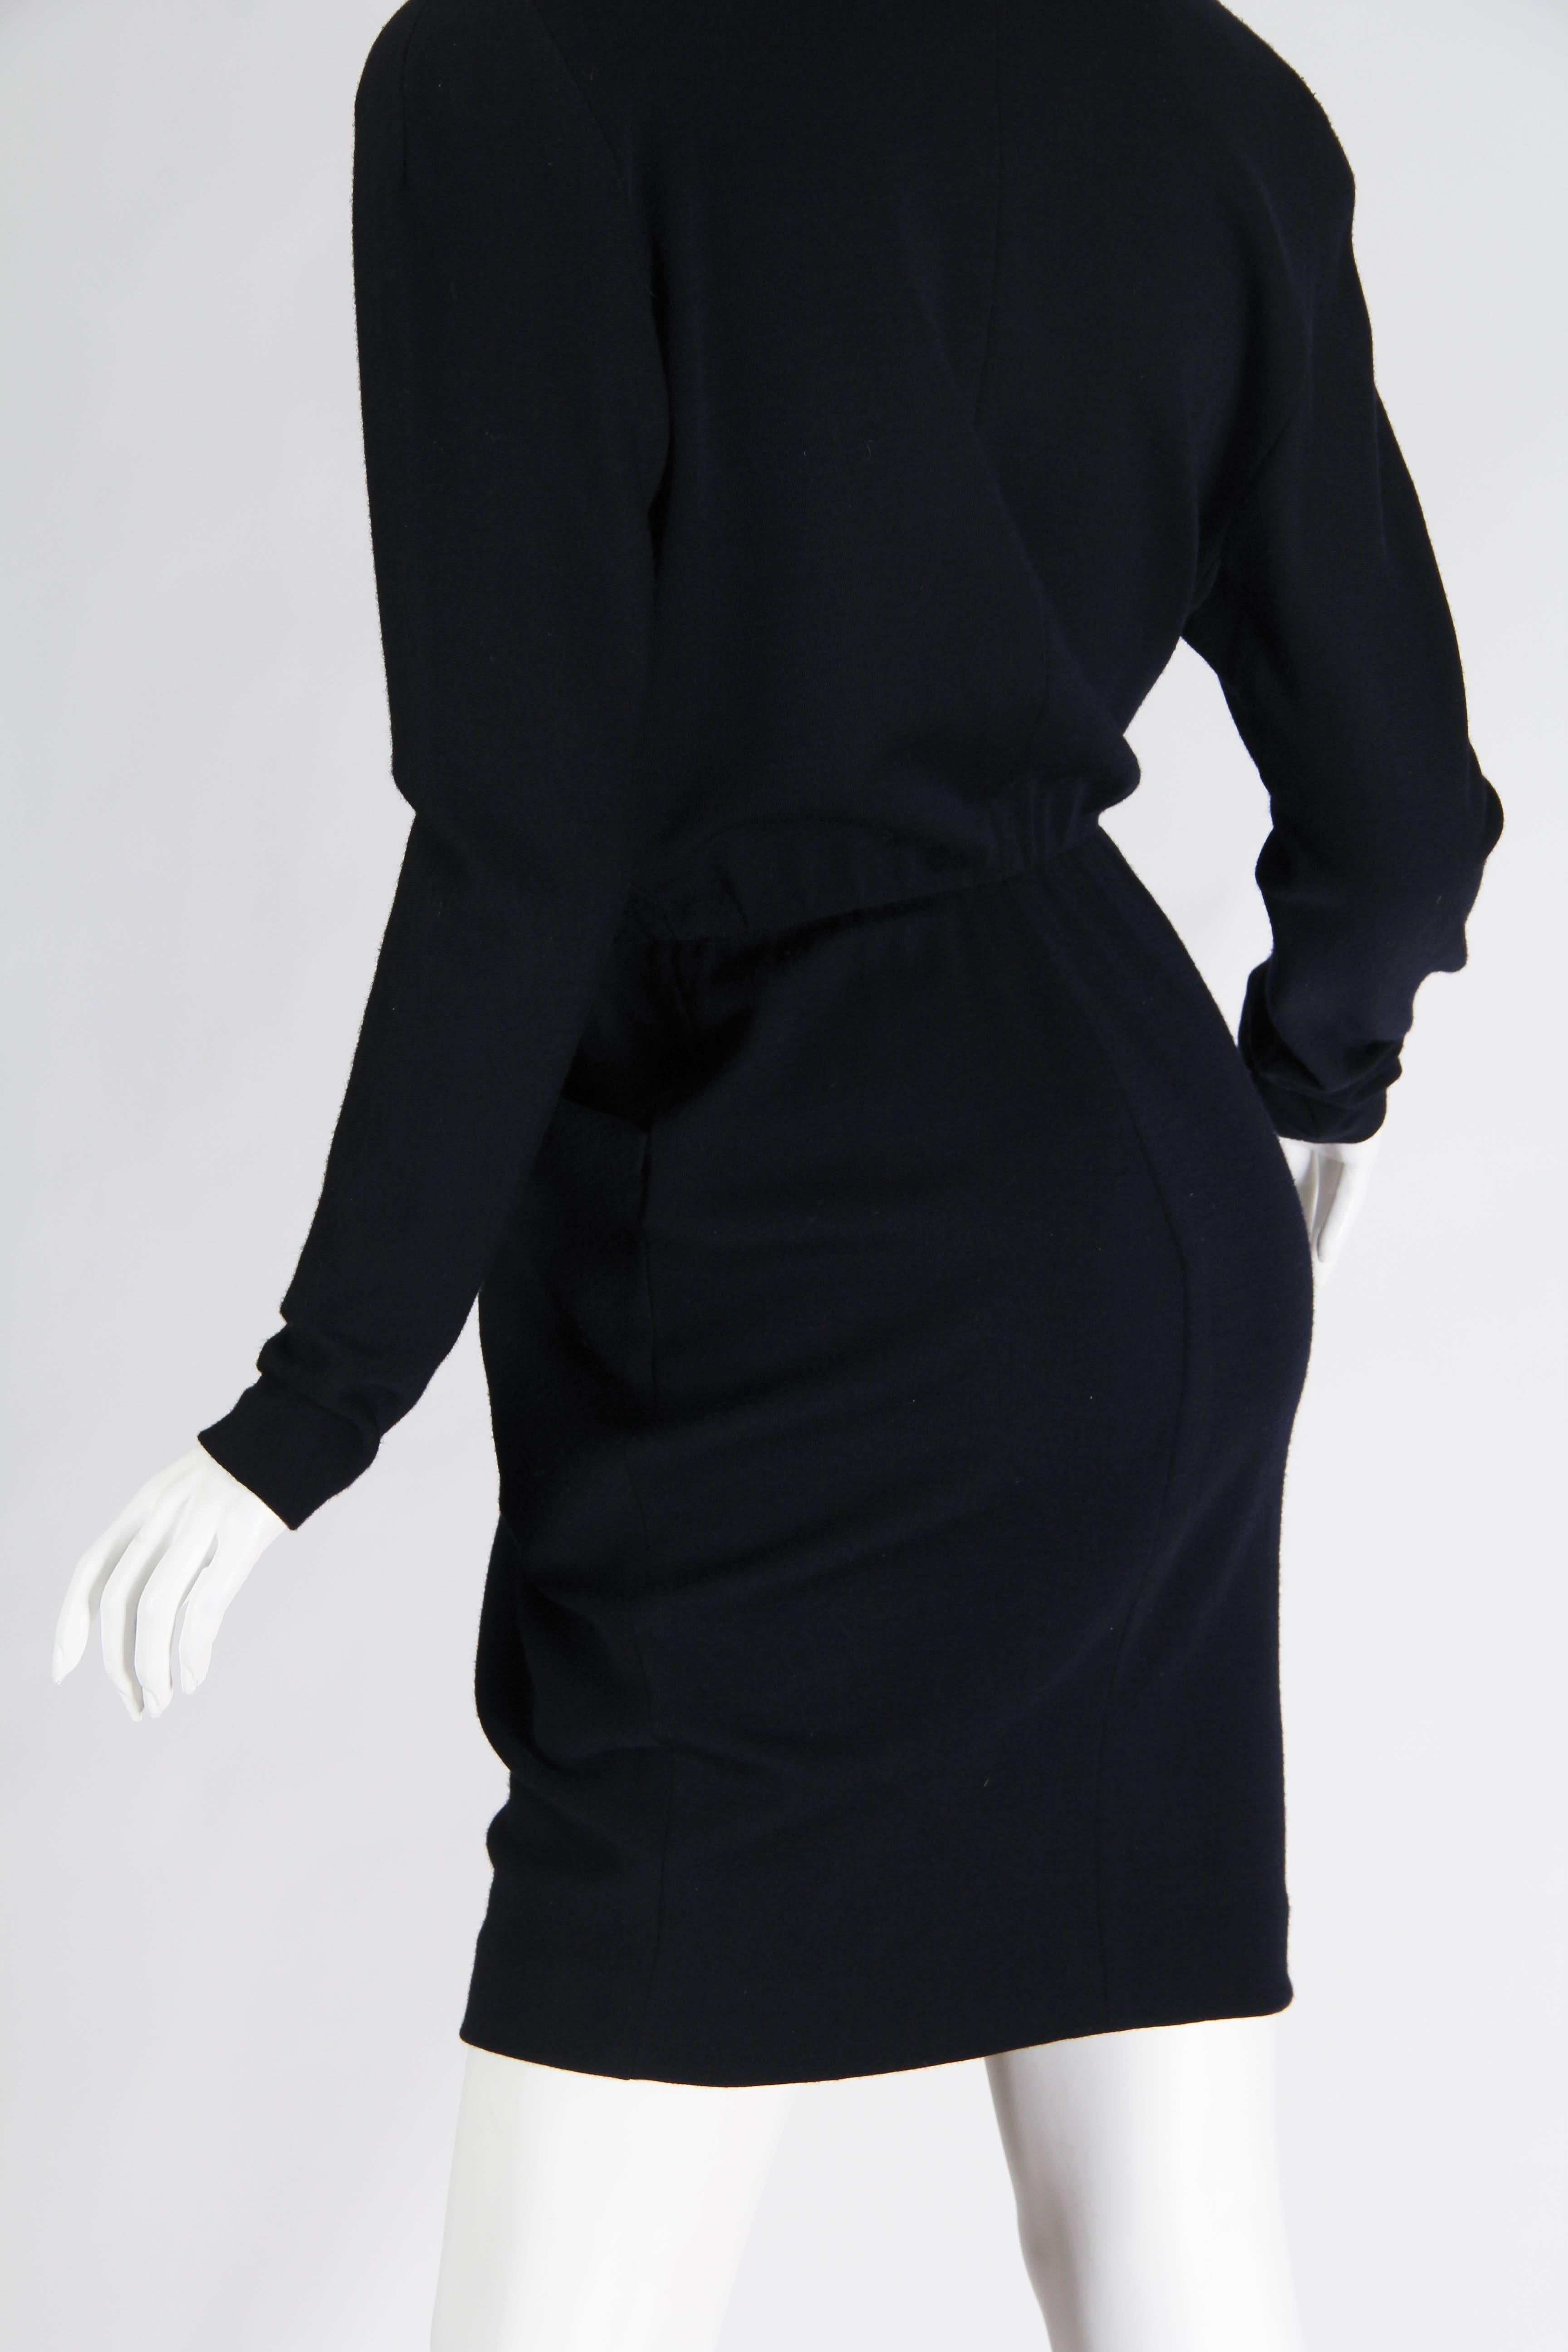 1980s Donna Karan Wool Jersey Dress with Plunging Neckline 1